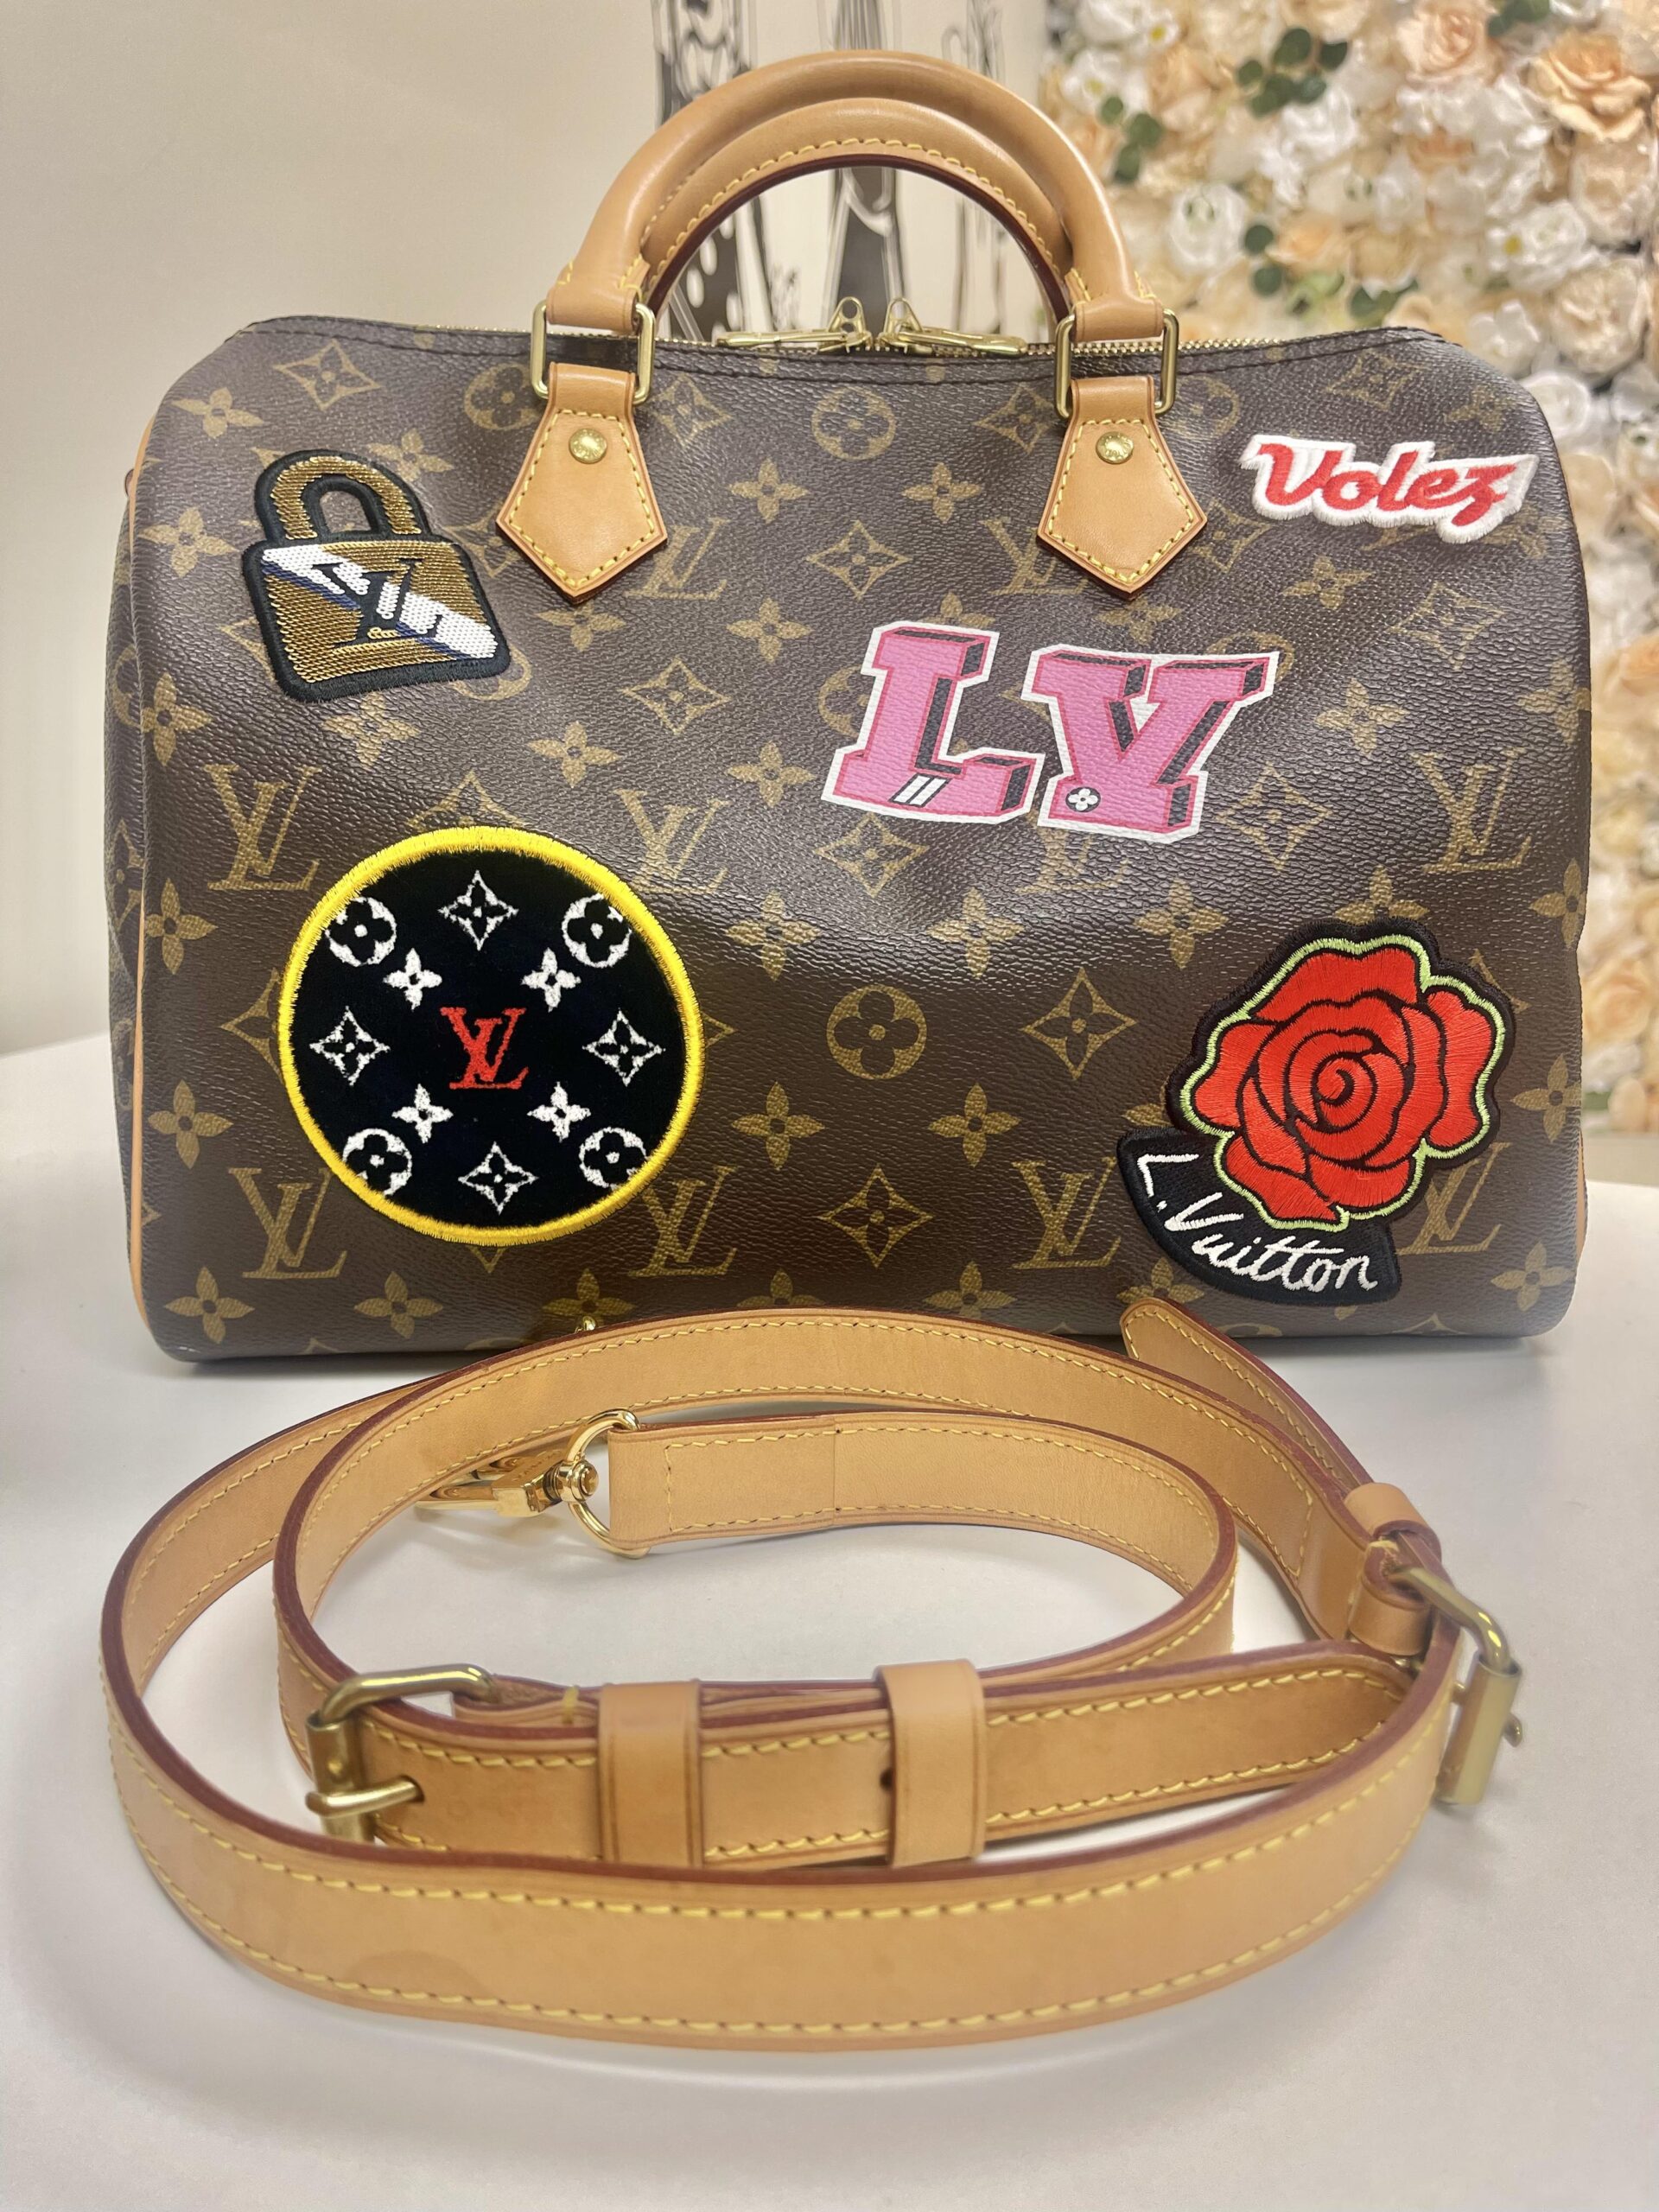 Louis Vuitton World Tour Bag Collection